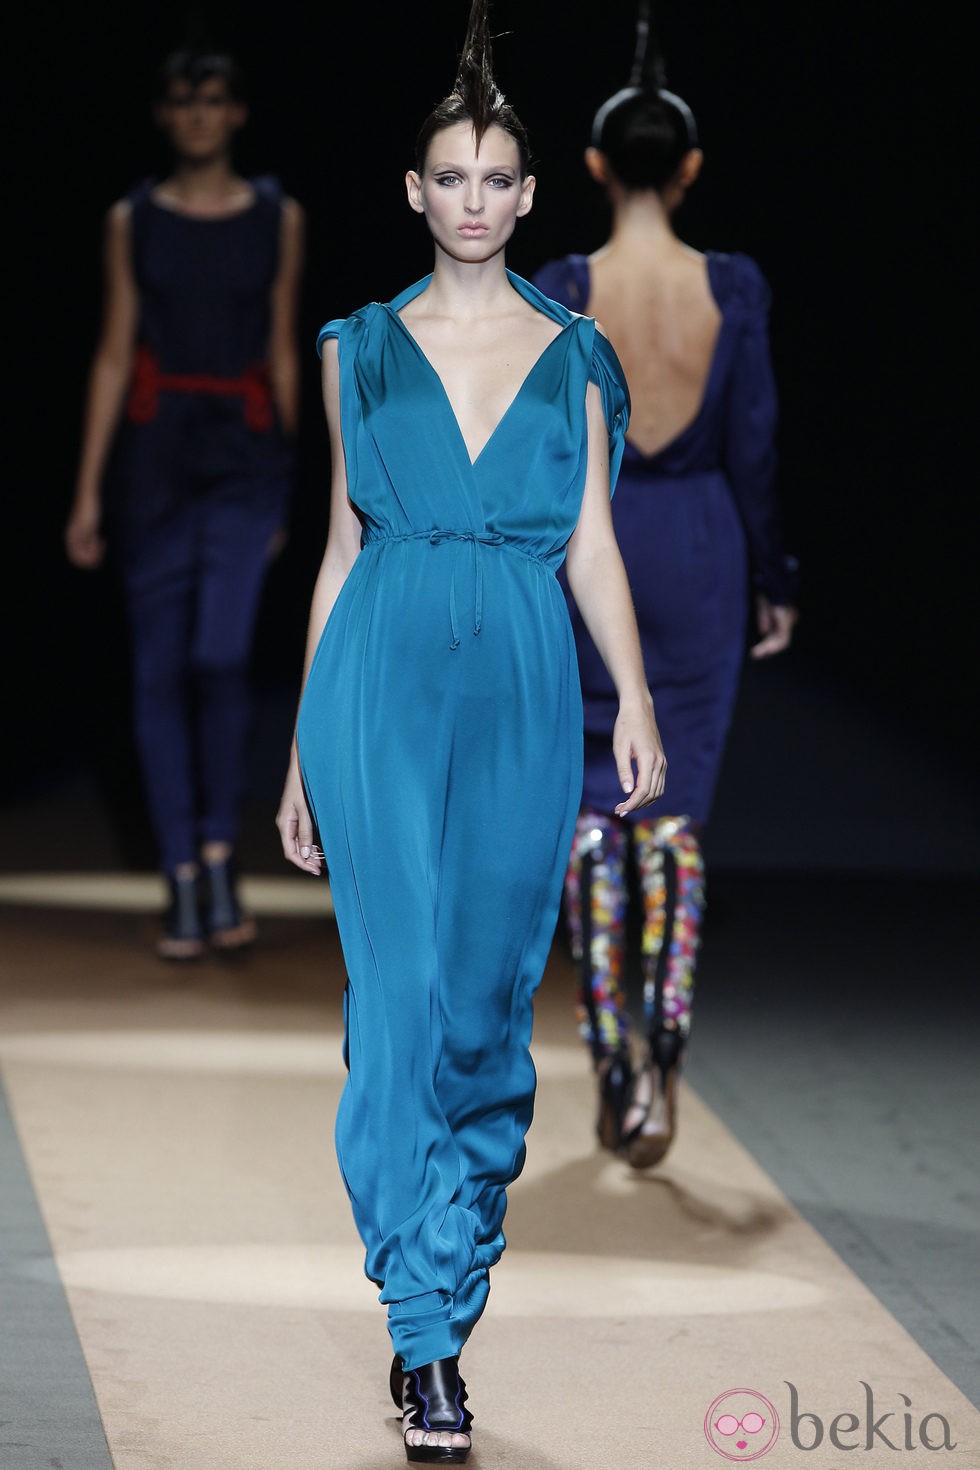 Vestido turquesa de Miguel Palacio, colección primavera de 2012